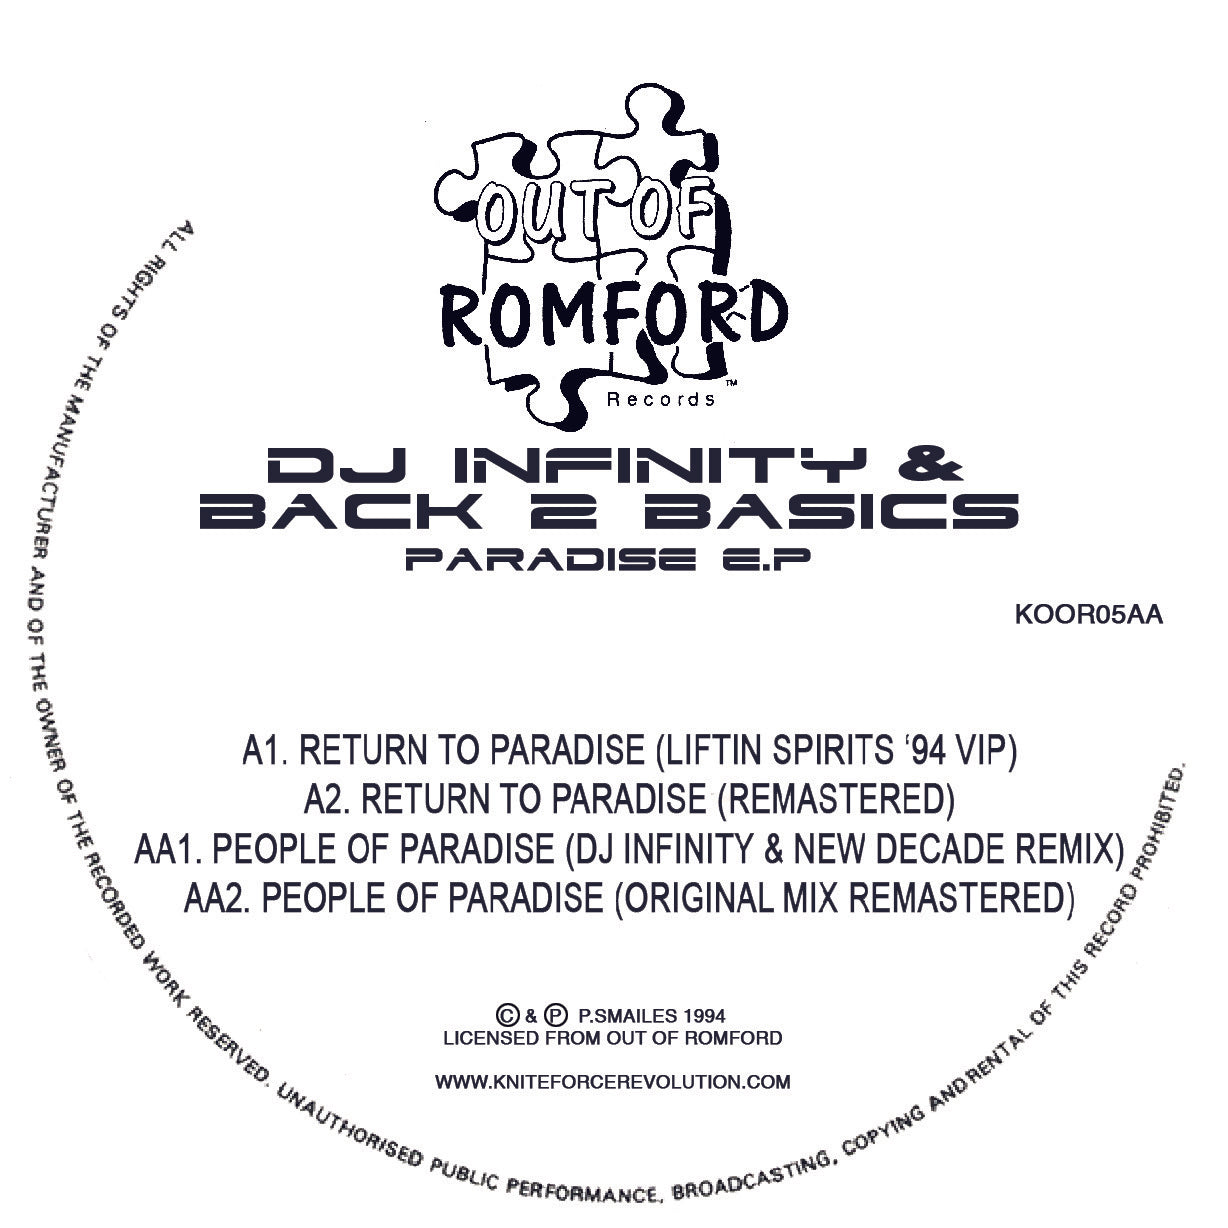 DJ INFINITY & BACK 2 BASICS 'PARADISE EP' 12"